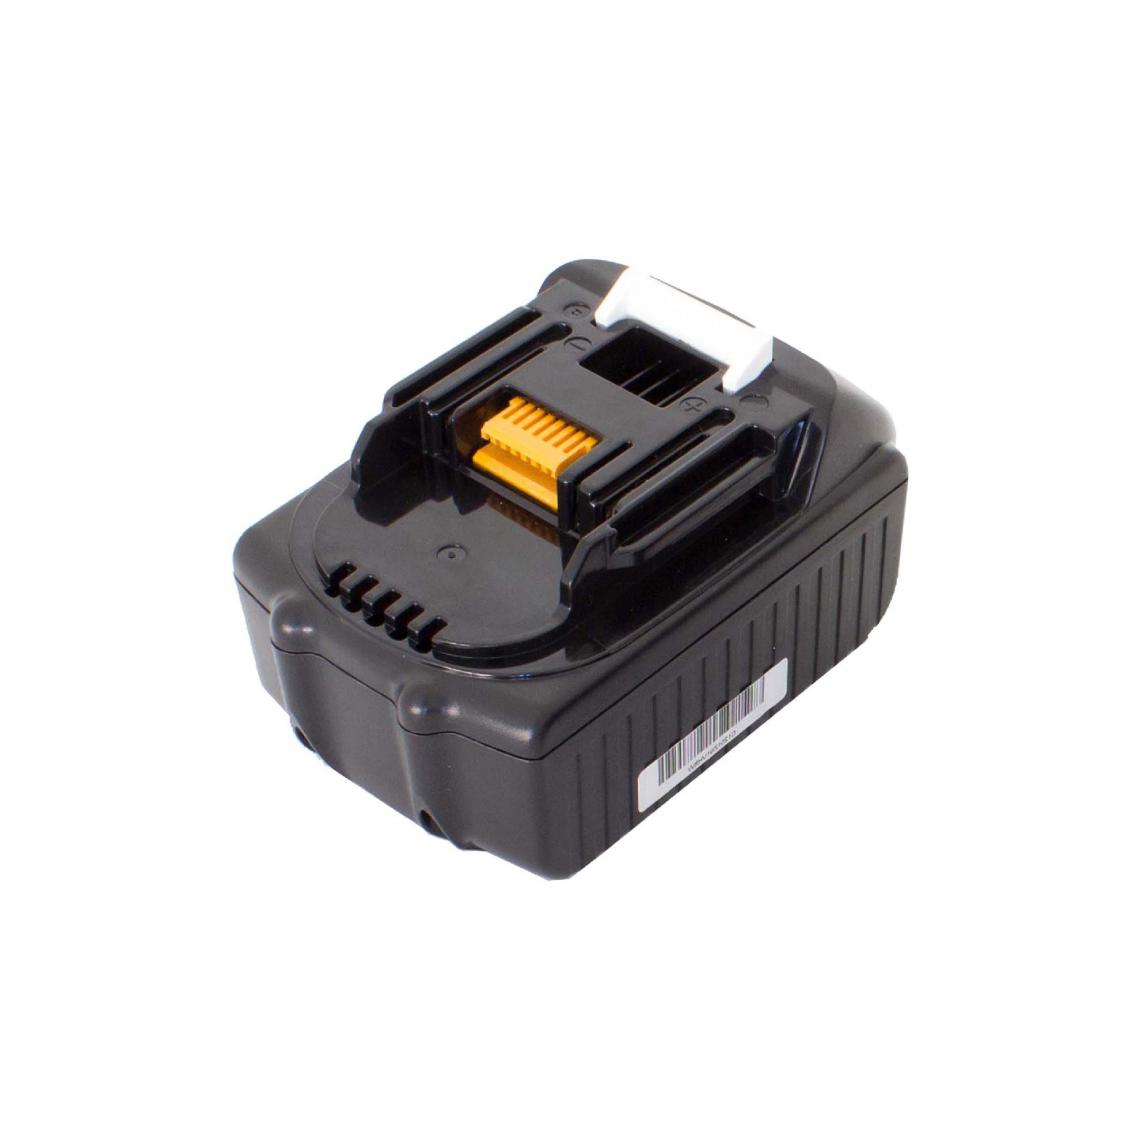 Vhbw - vhbw Batterie compatible avec Makita ML185, ML800, ML801, MR050, MR100, MR100W, MT071E outil électrique (1500 mAh, Li-ion, 18 V) - Accessoires vissage, perçage